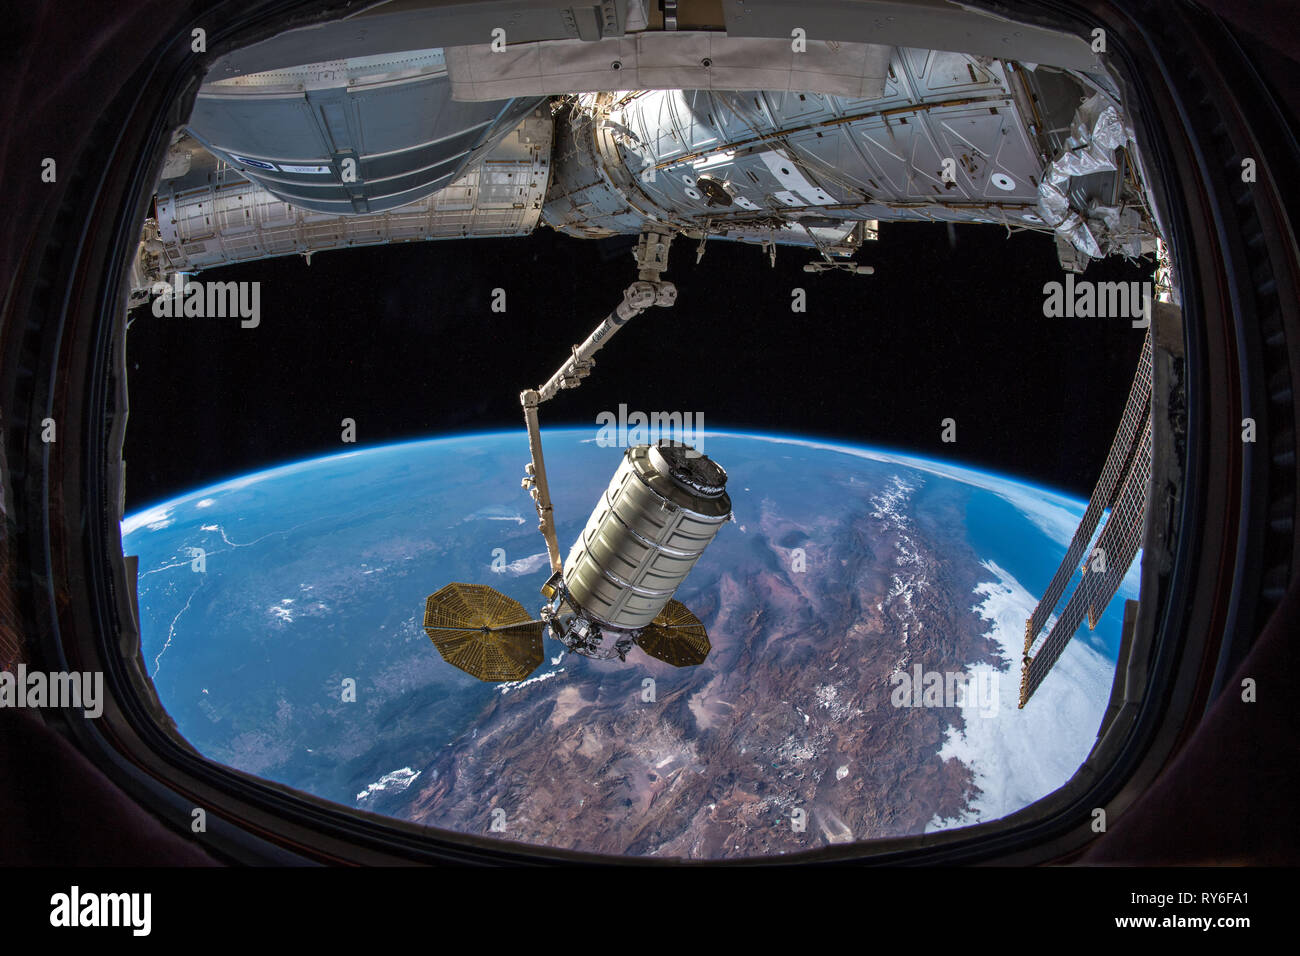 Cygnys-Raumschiff dockte an die ISS (Internationale Raumstation) an und lieferte Forschung und Material. Abfahrt am 2019. Februar. Stockfoto